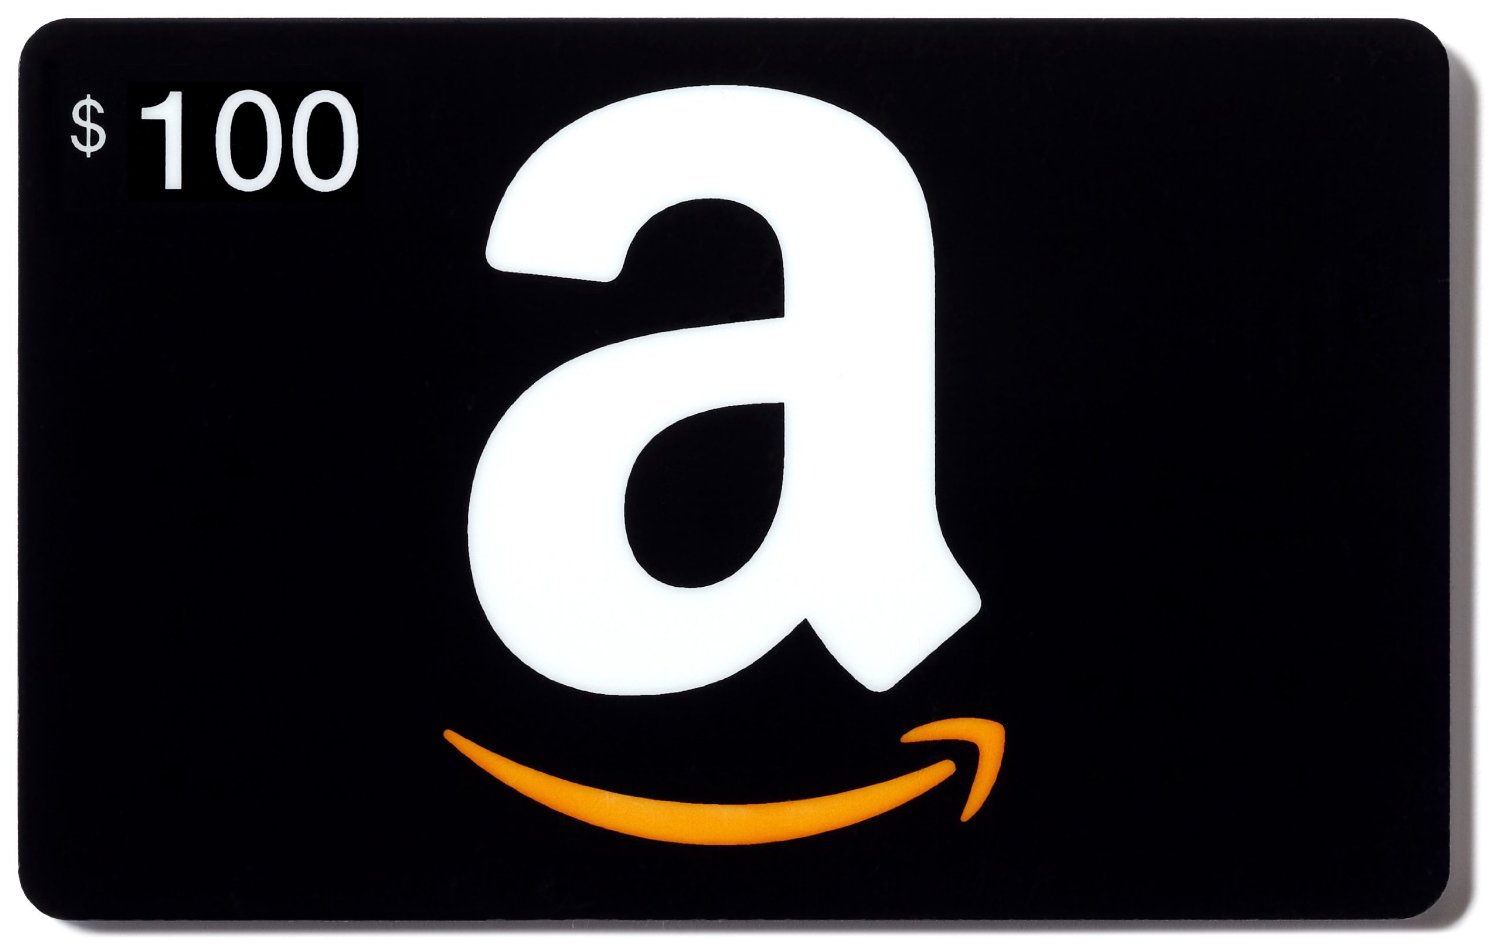 The 100 Amazon